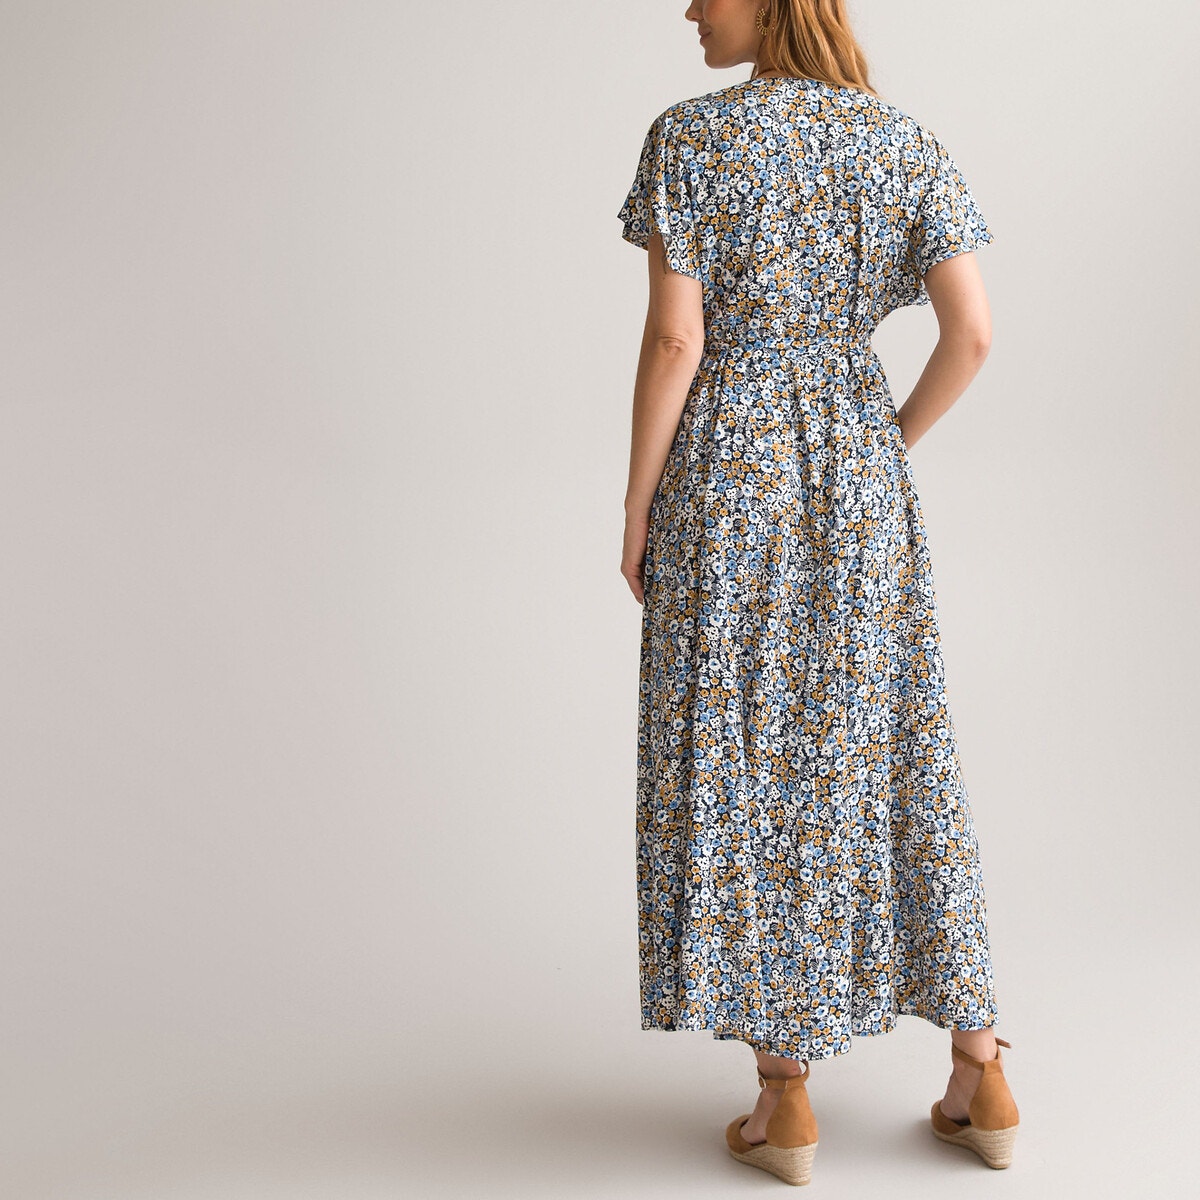 Εβαζέ μακρύ φόρεμα με φλοράλ μοτίβο